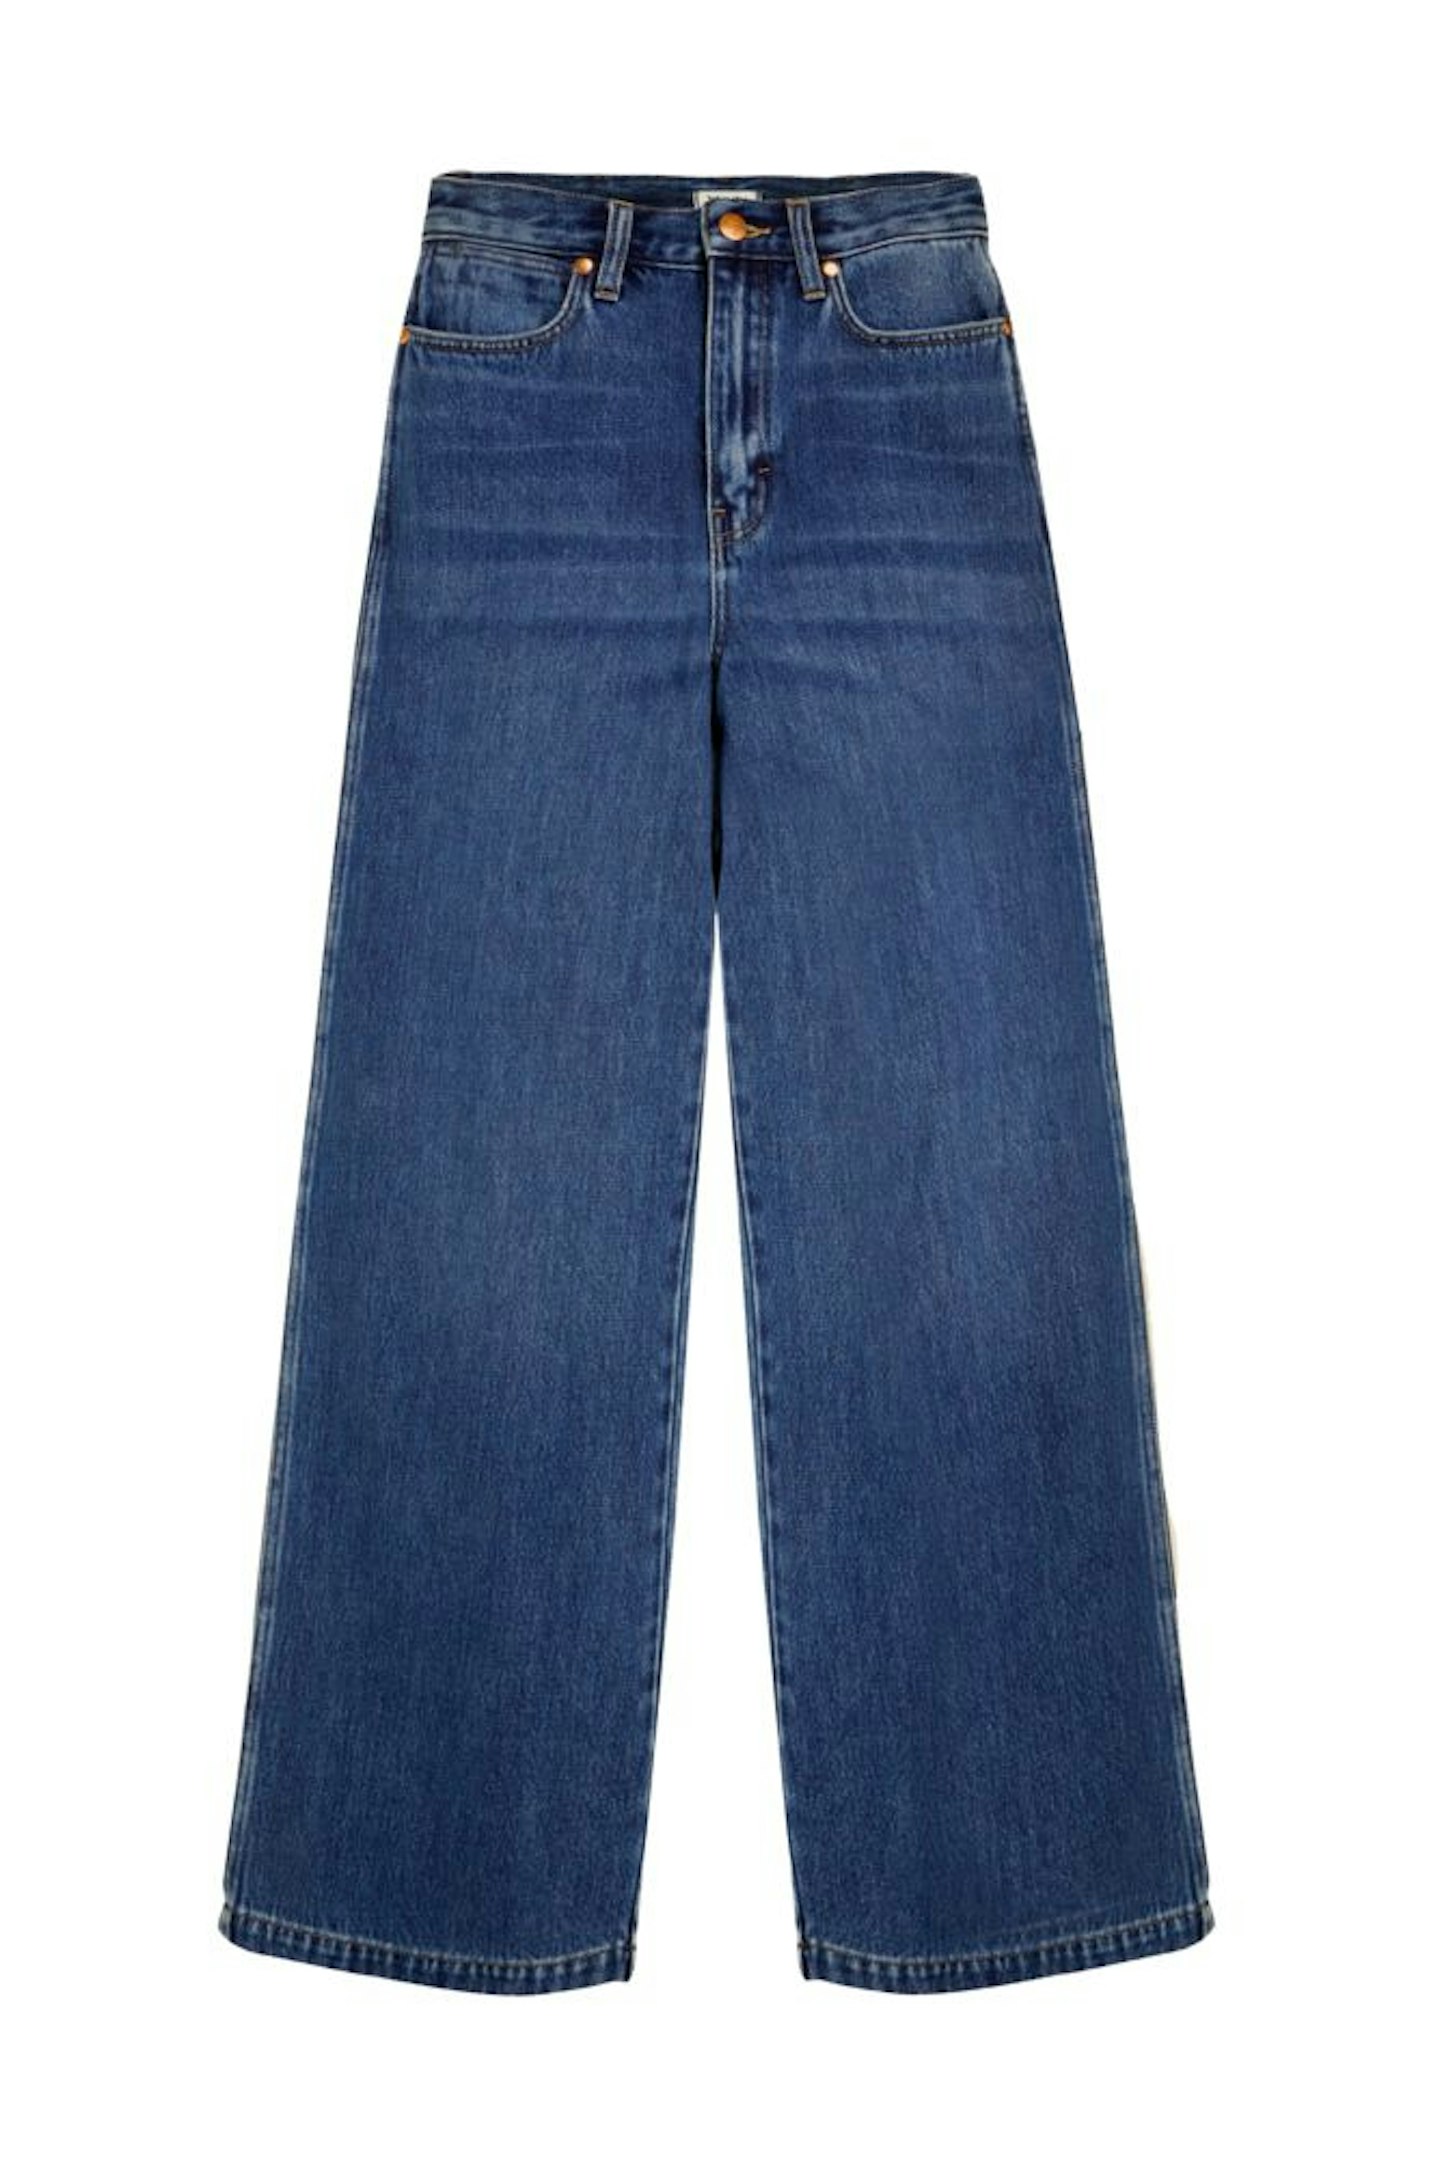 Wrangler, Worldwide Jeans In Dard Ranch Blue, £40